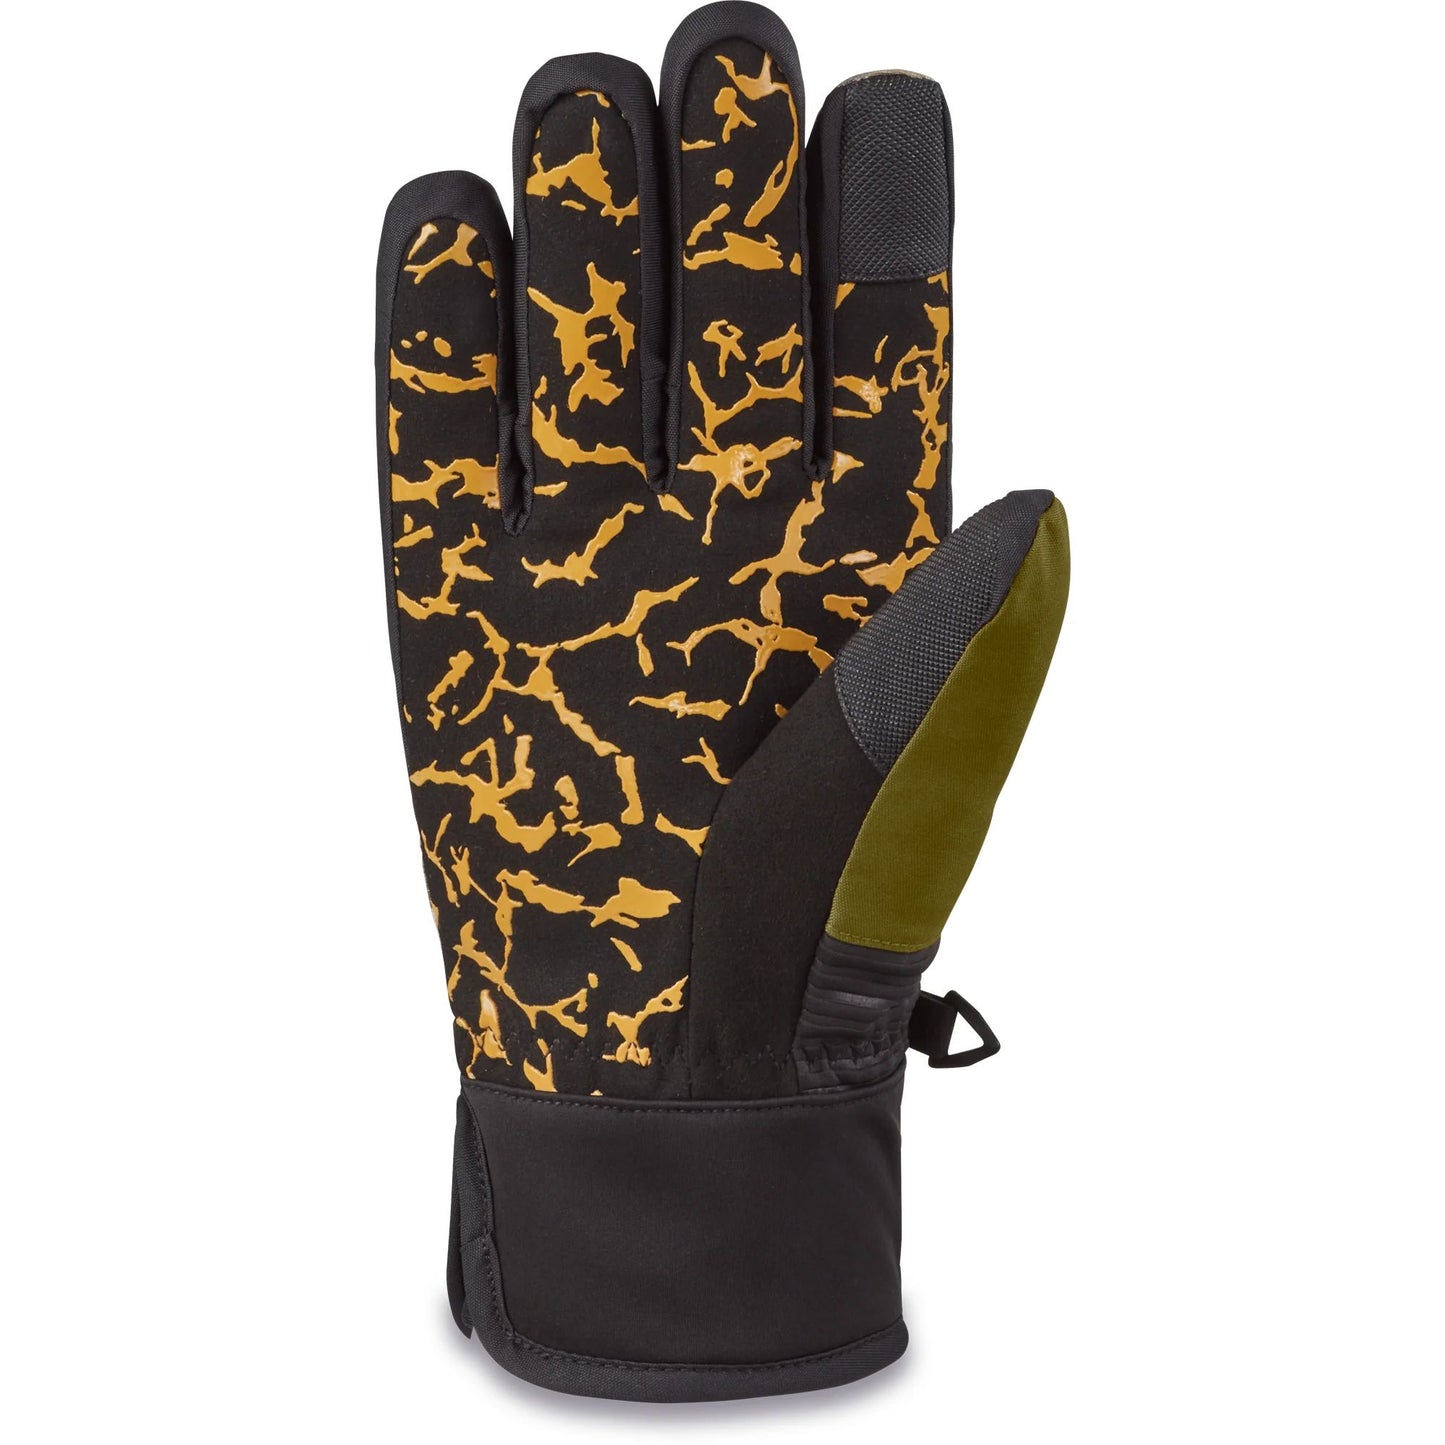 Dakine Crossfire Glove Vintage Camo - Dakine Snow Gloves